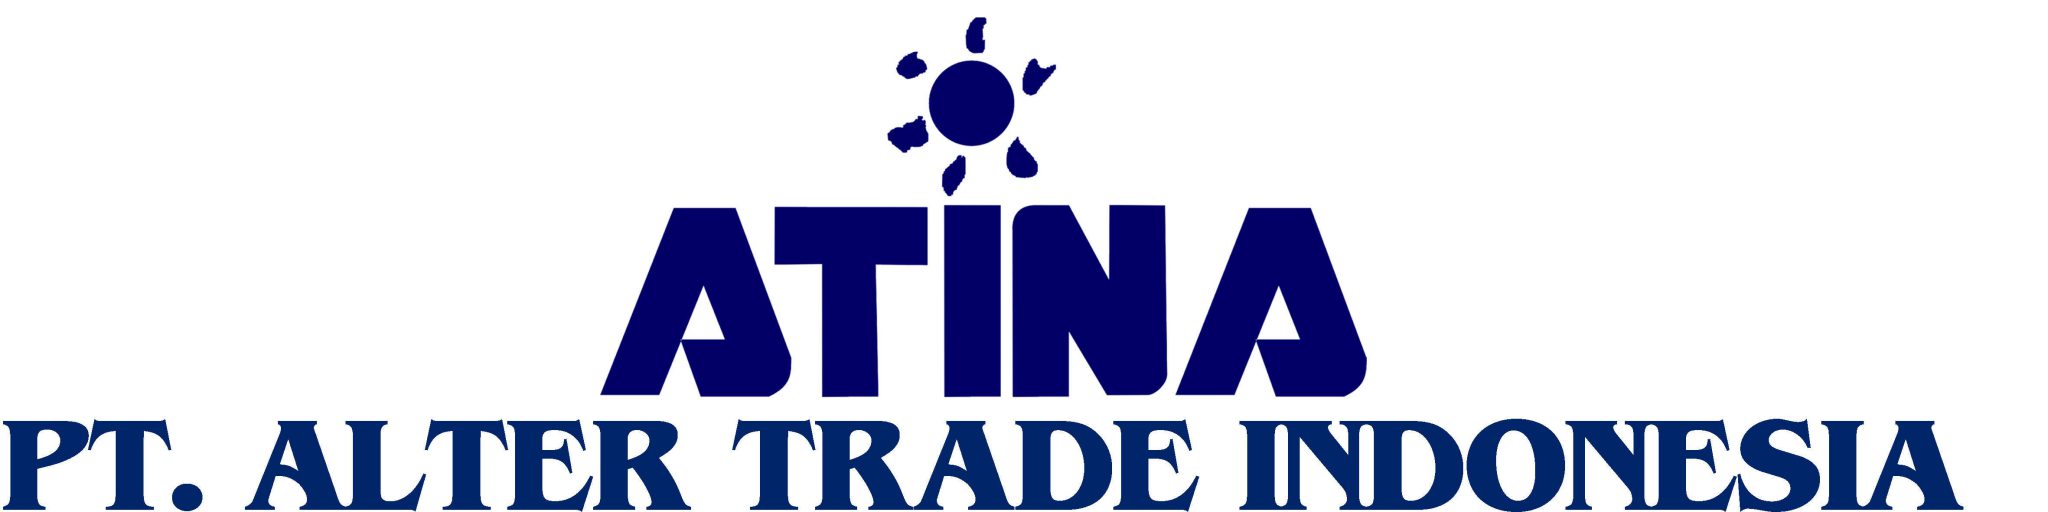 P.TAlter Trade Indonesia(ATINA)